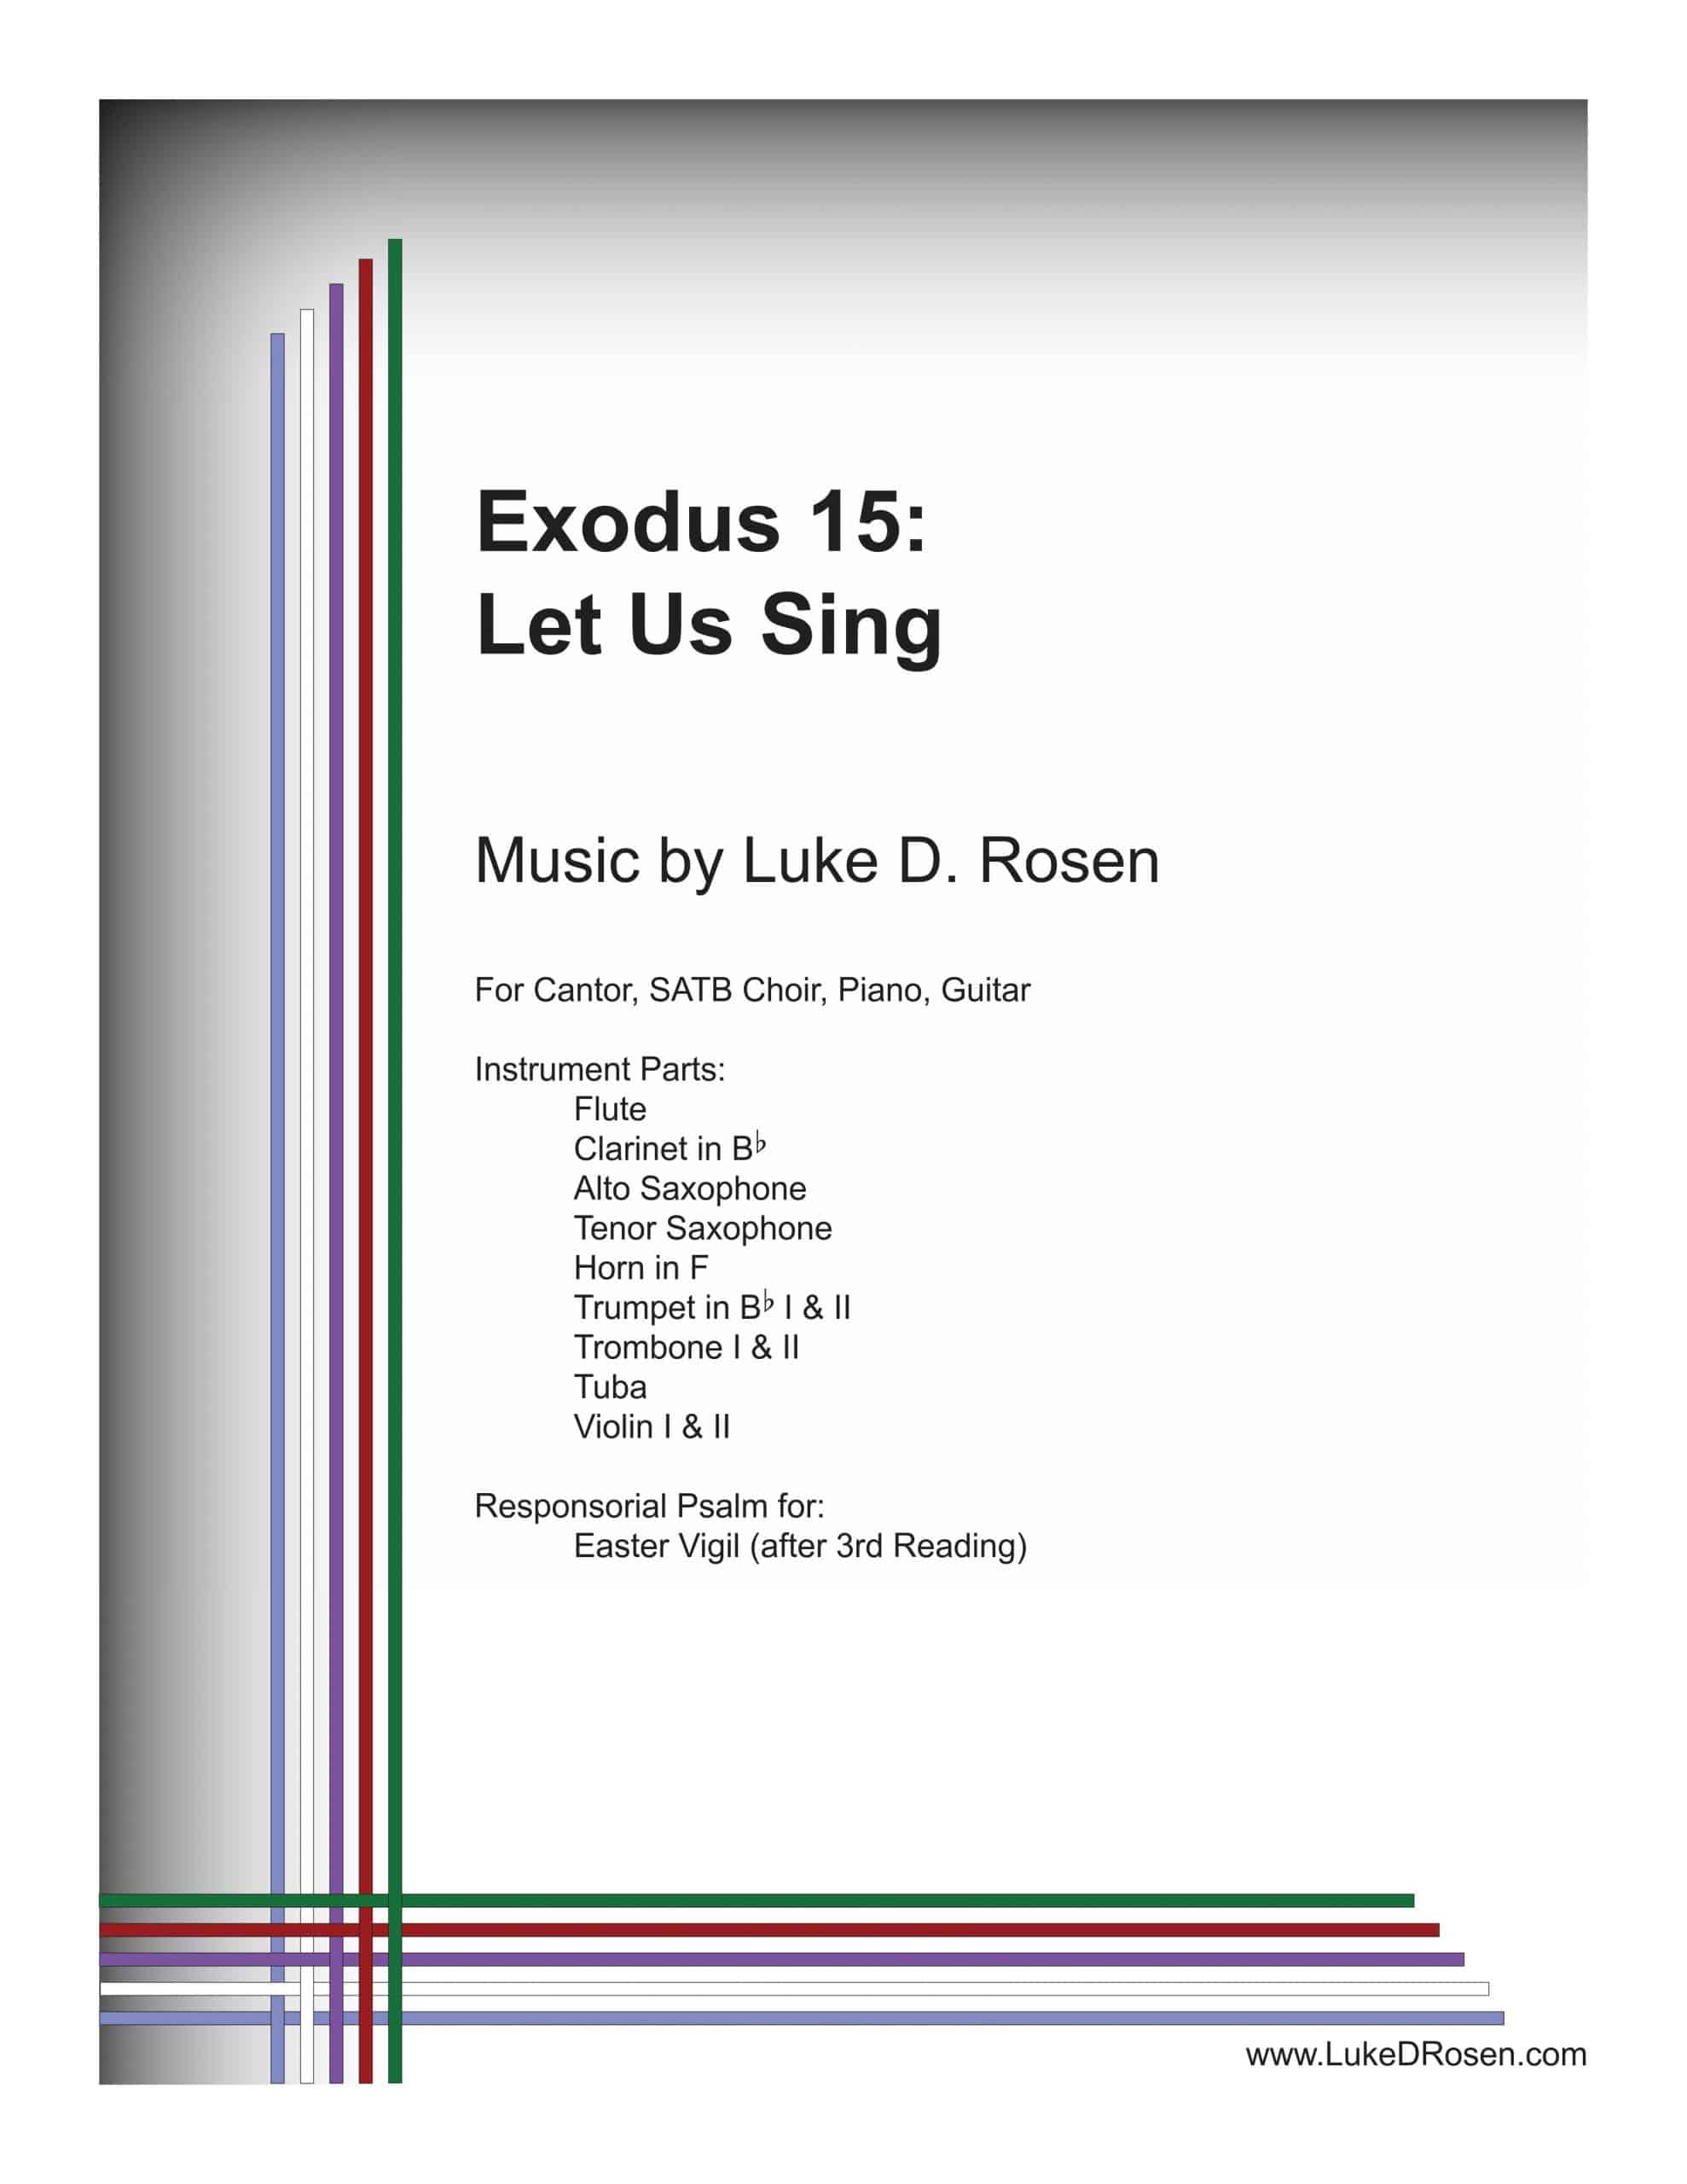 Exodus 15 – Let Us Sing (Rosen)